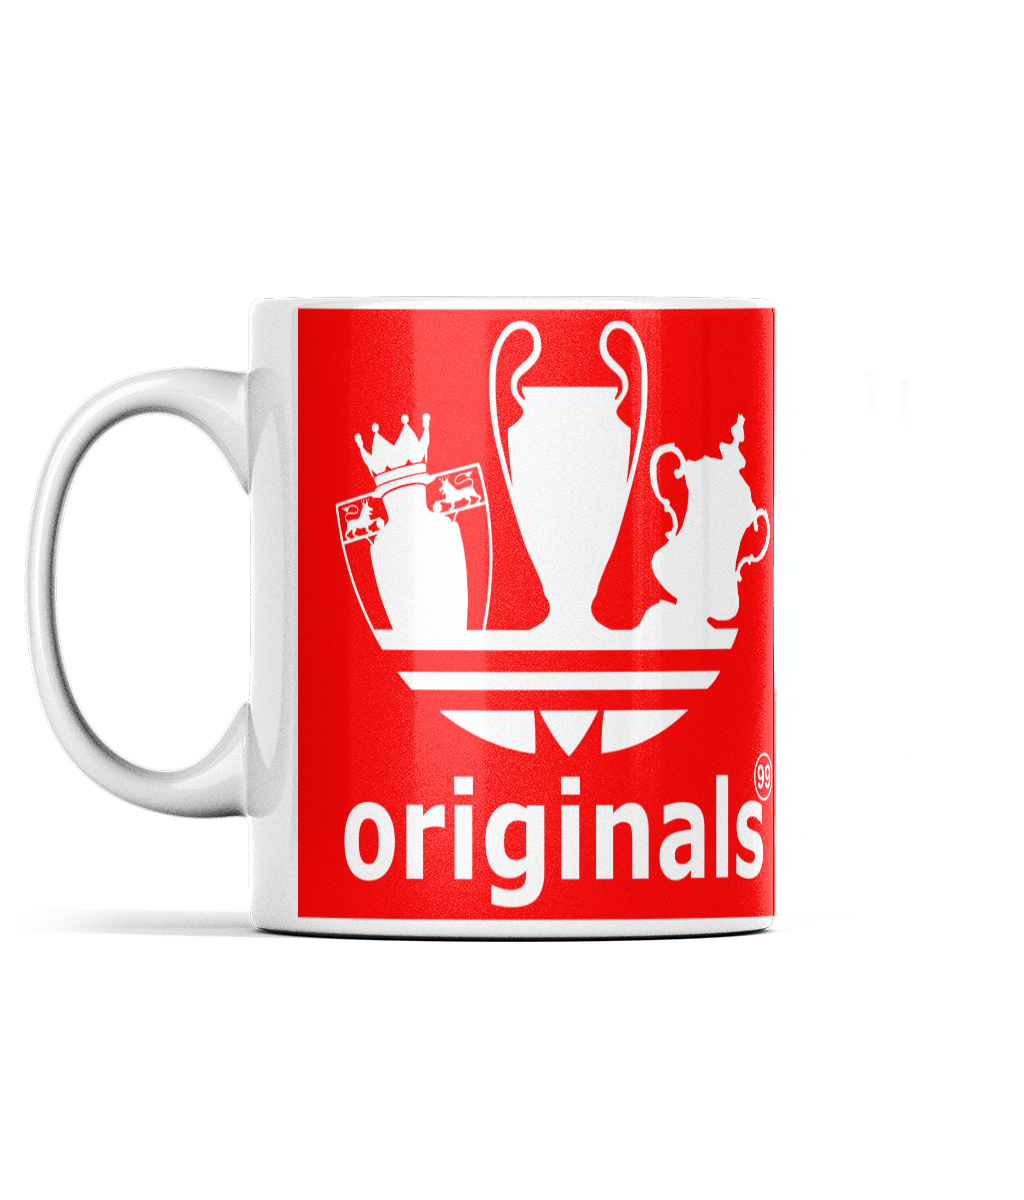 The Treble Originals 99 Mug